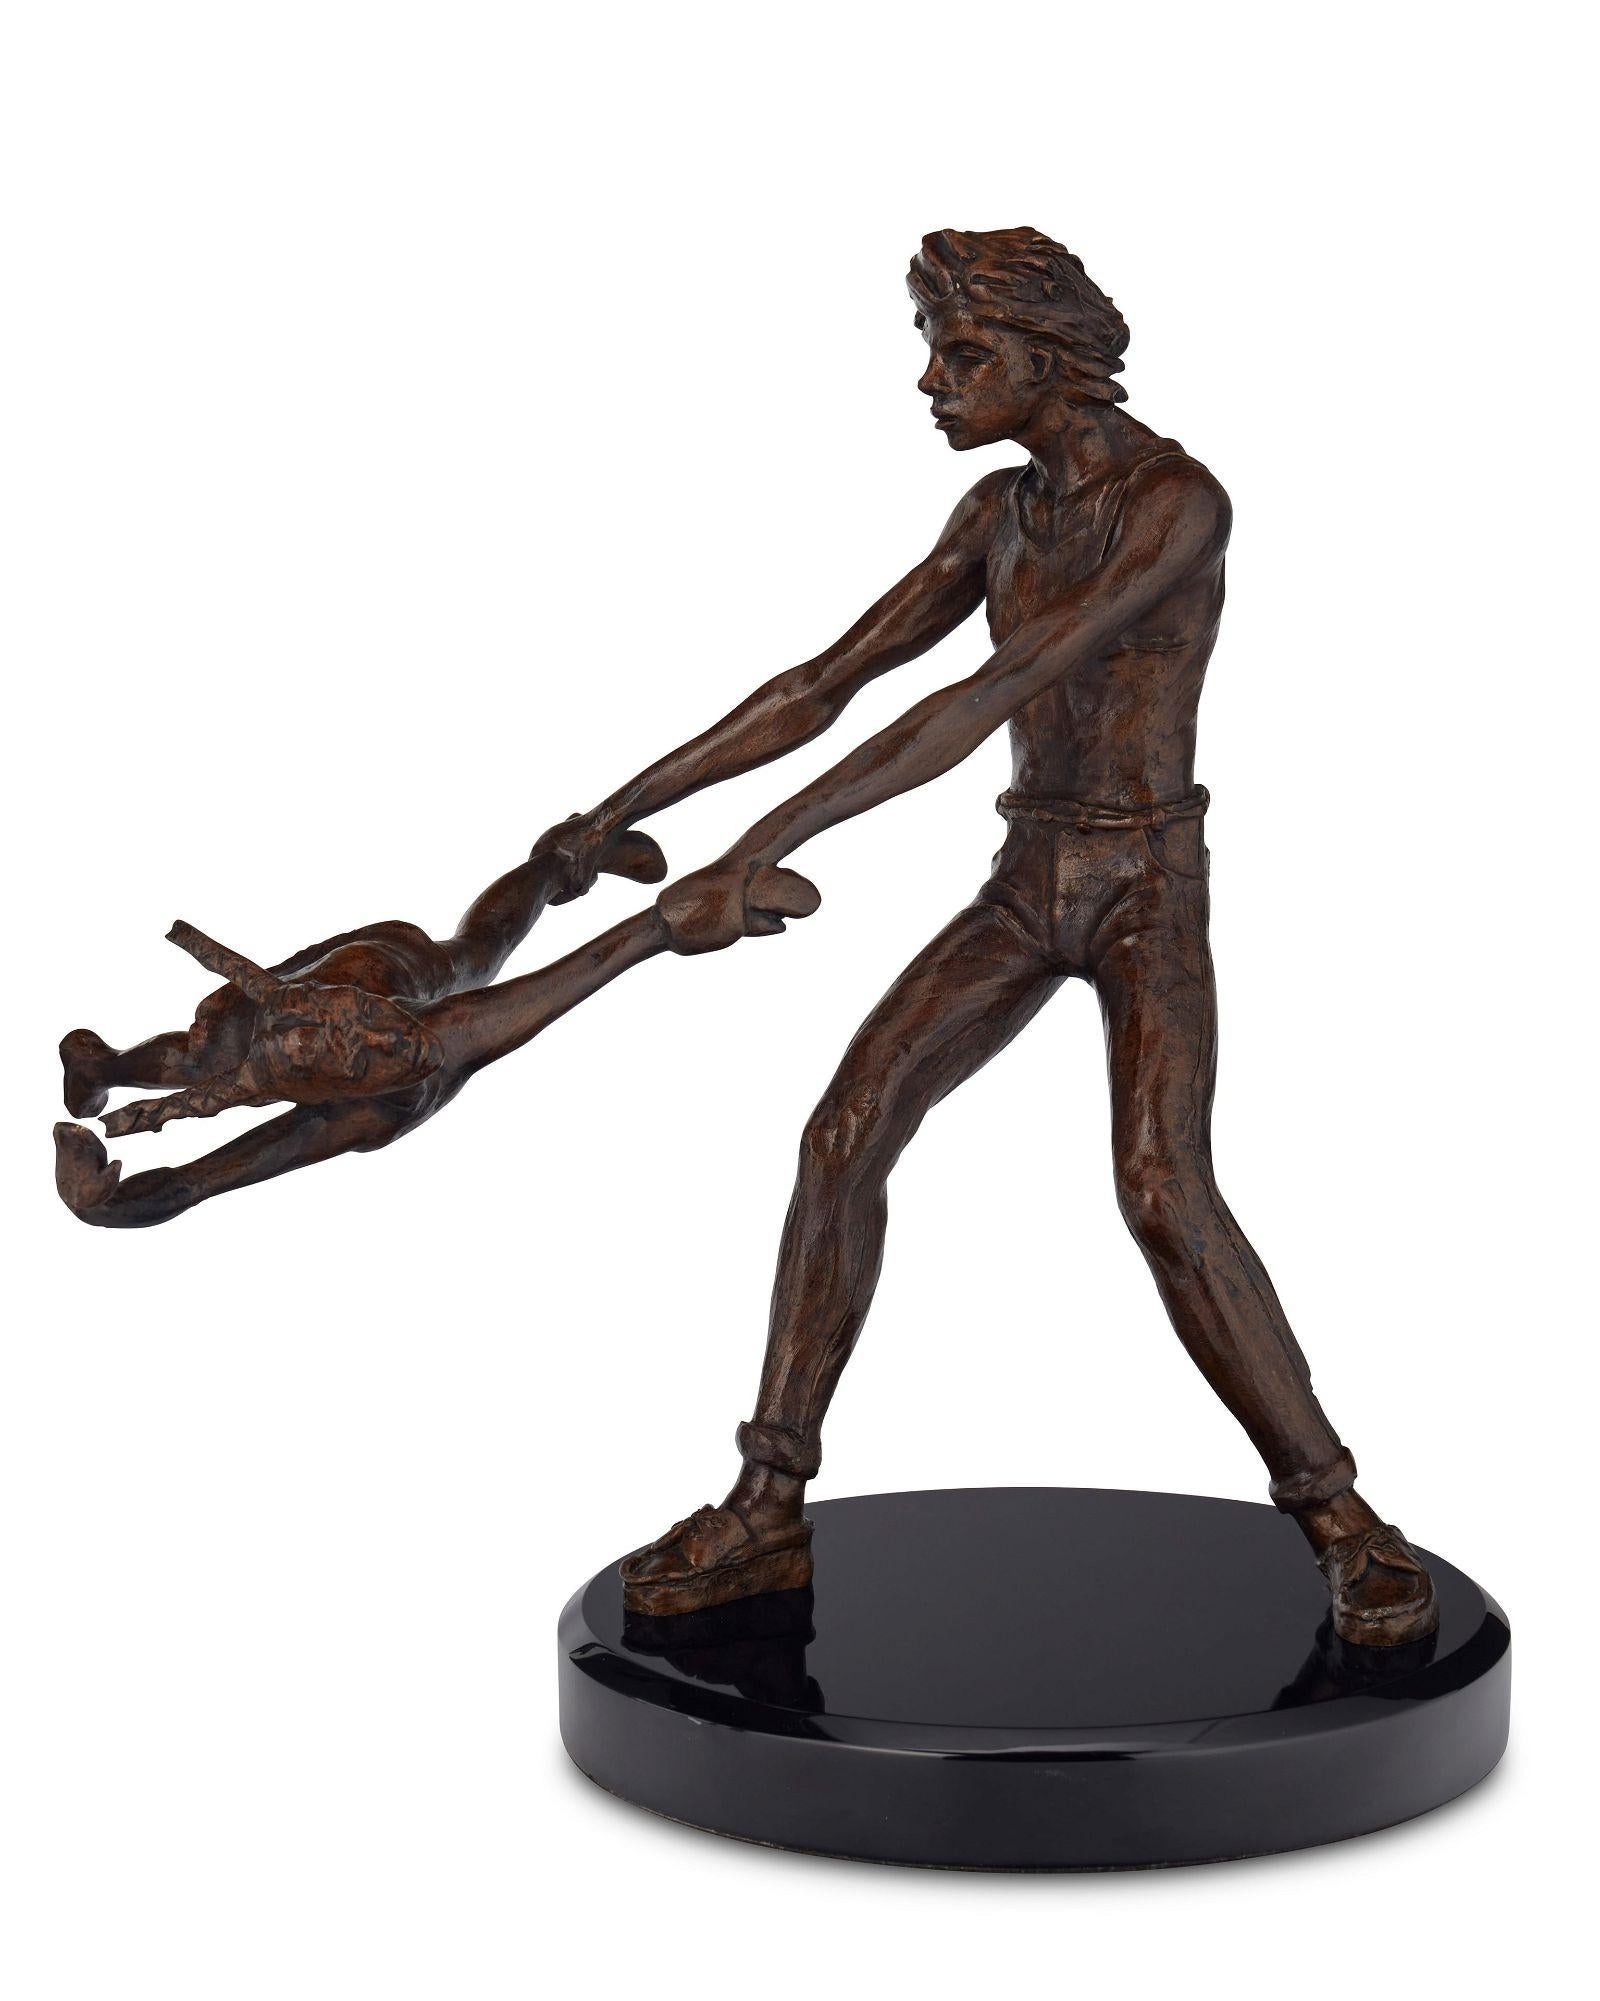 Voici l'exceptionnelle sculpture en bronze du célèbre artiste Victor Salmones (1937-1989). Cette pièce exquise présente une scène captivante d'un homme balançant une petite fille par le bras et le pied.
 Réalisée avec une attention méticuleuse aux